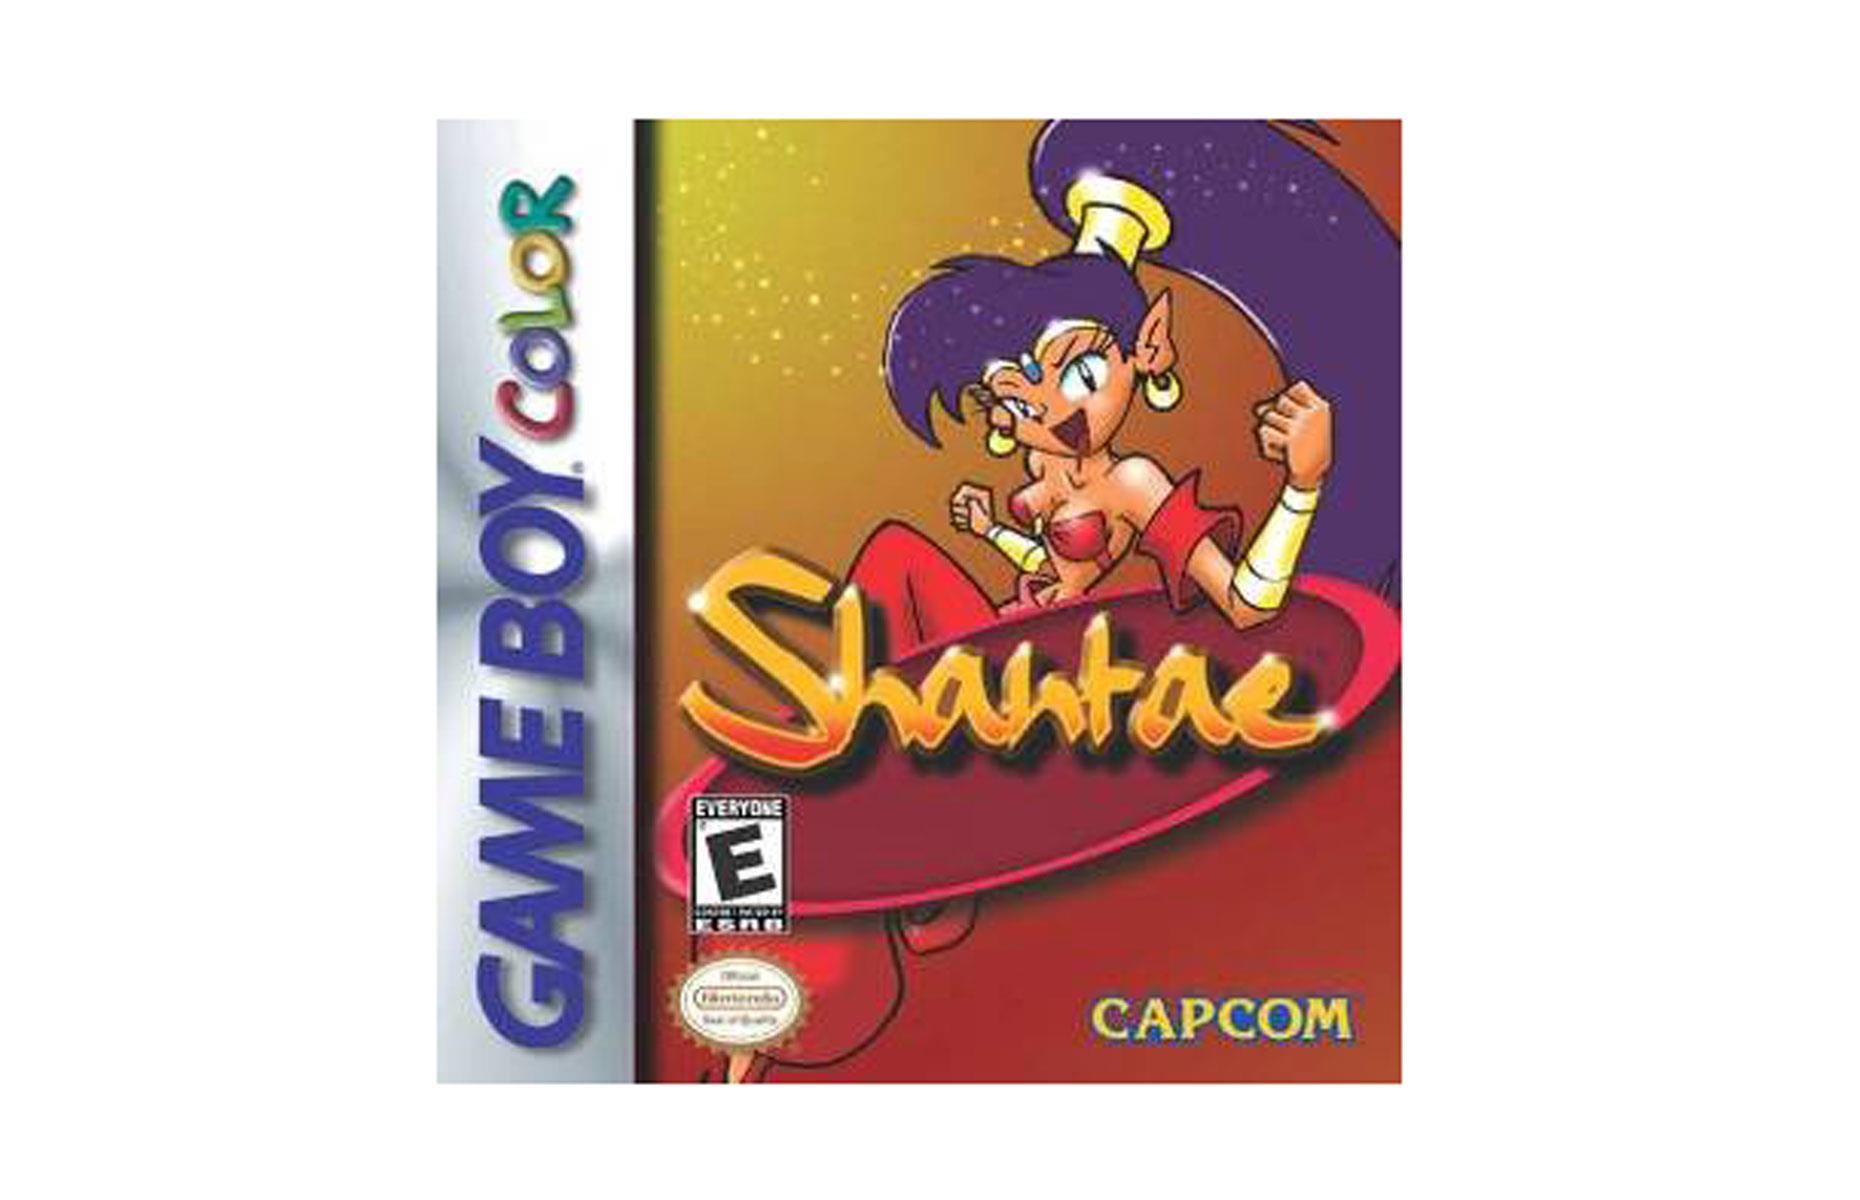 Shantae (Capcom) for Nintendo Game Boy Color, 2002: up to $2,300 (£1.6k)